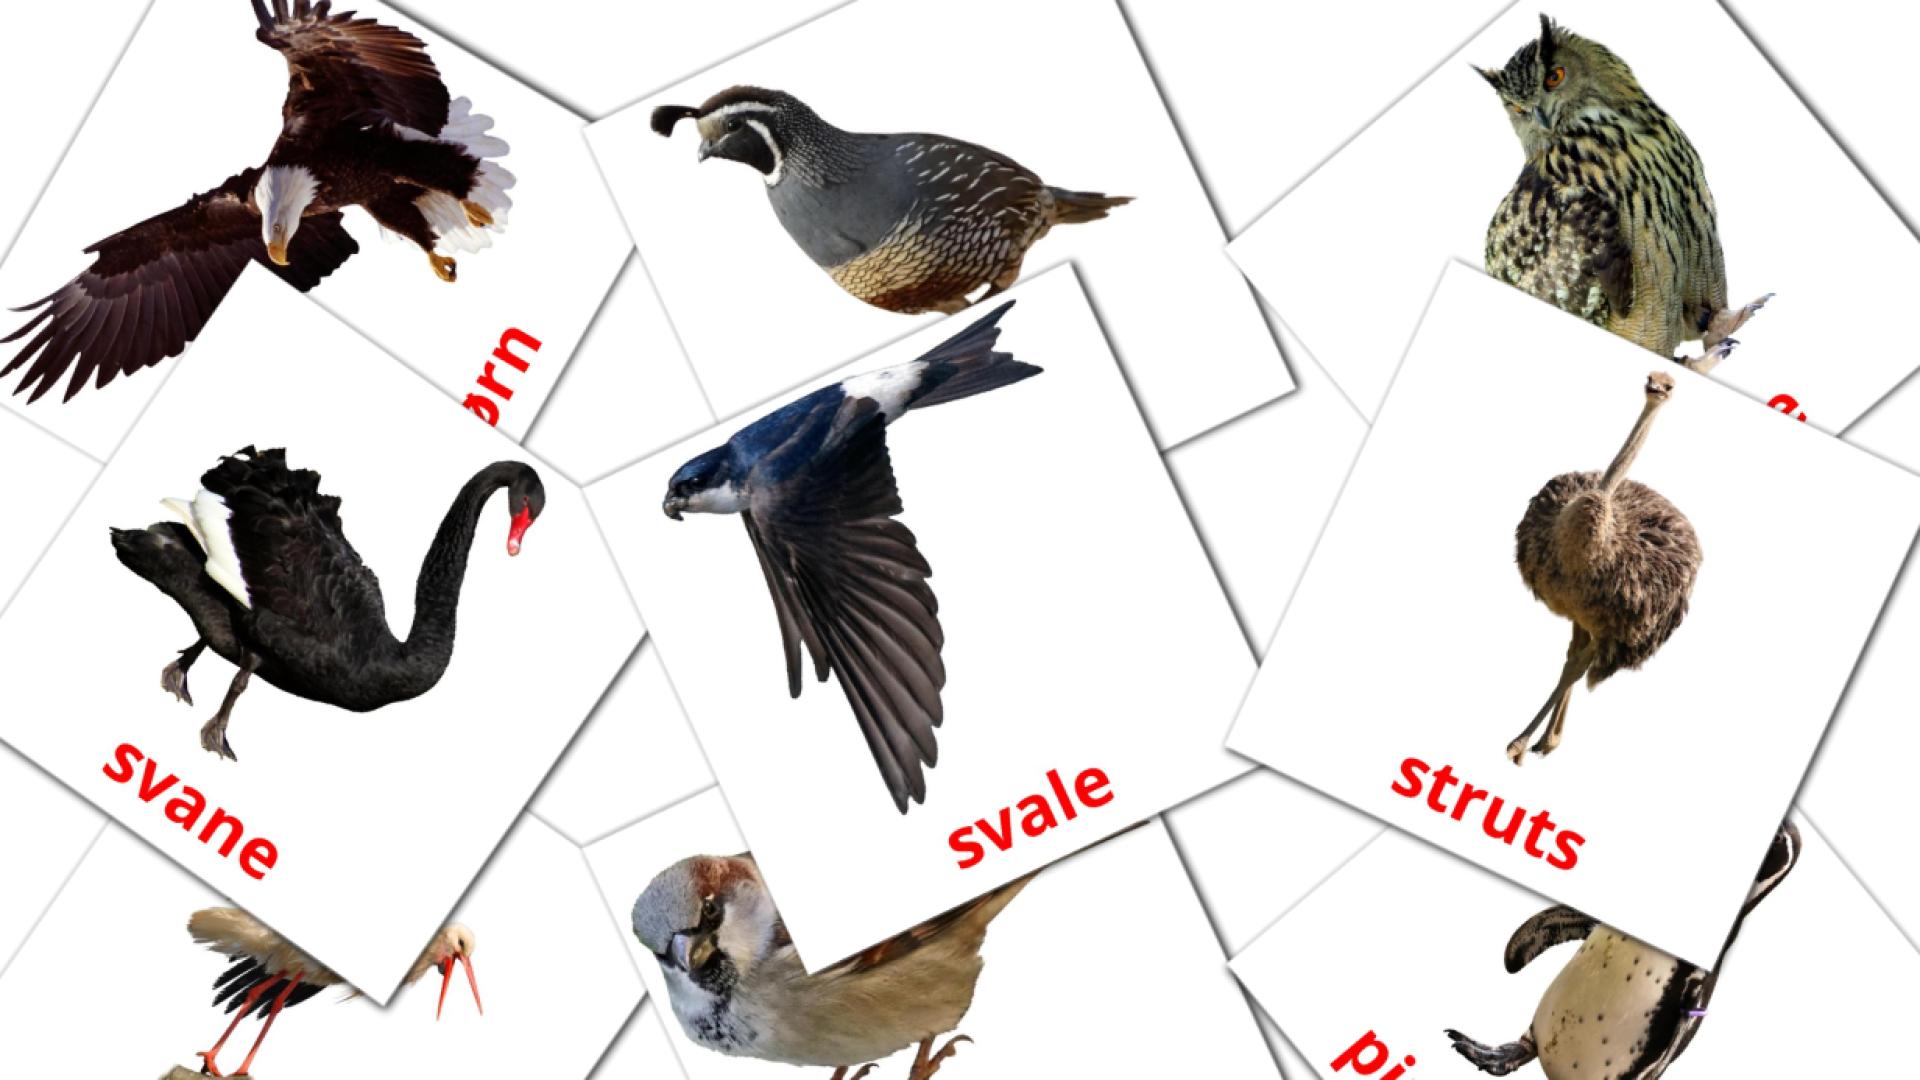 Fugler norwegian vocabulary flashcards